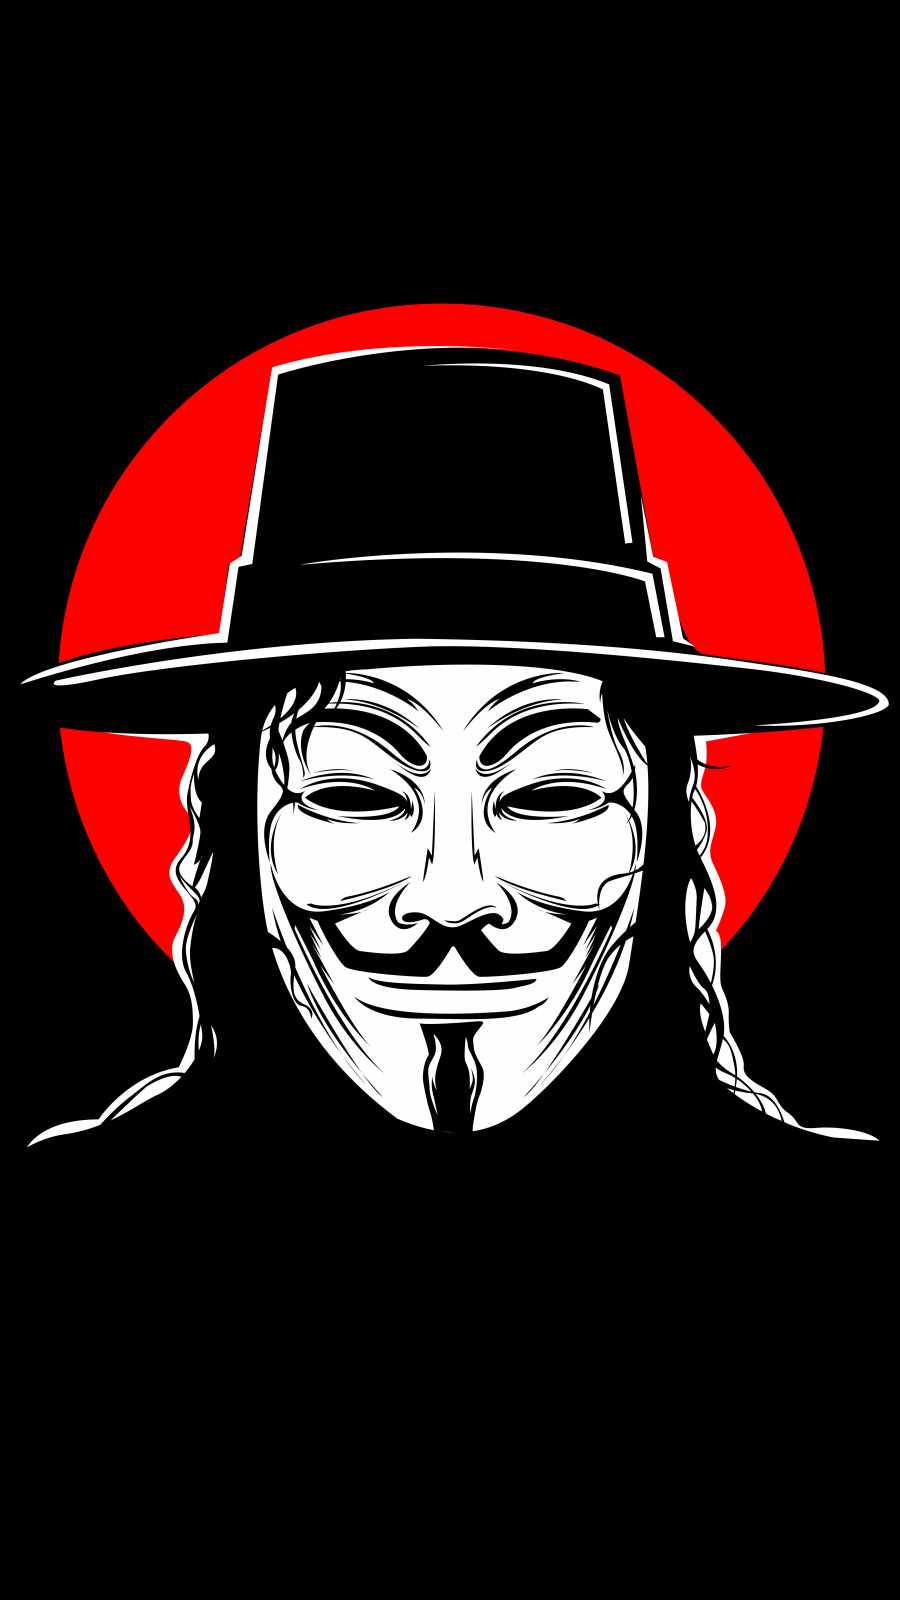 V for Vendetta iPhone Wallpaper